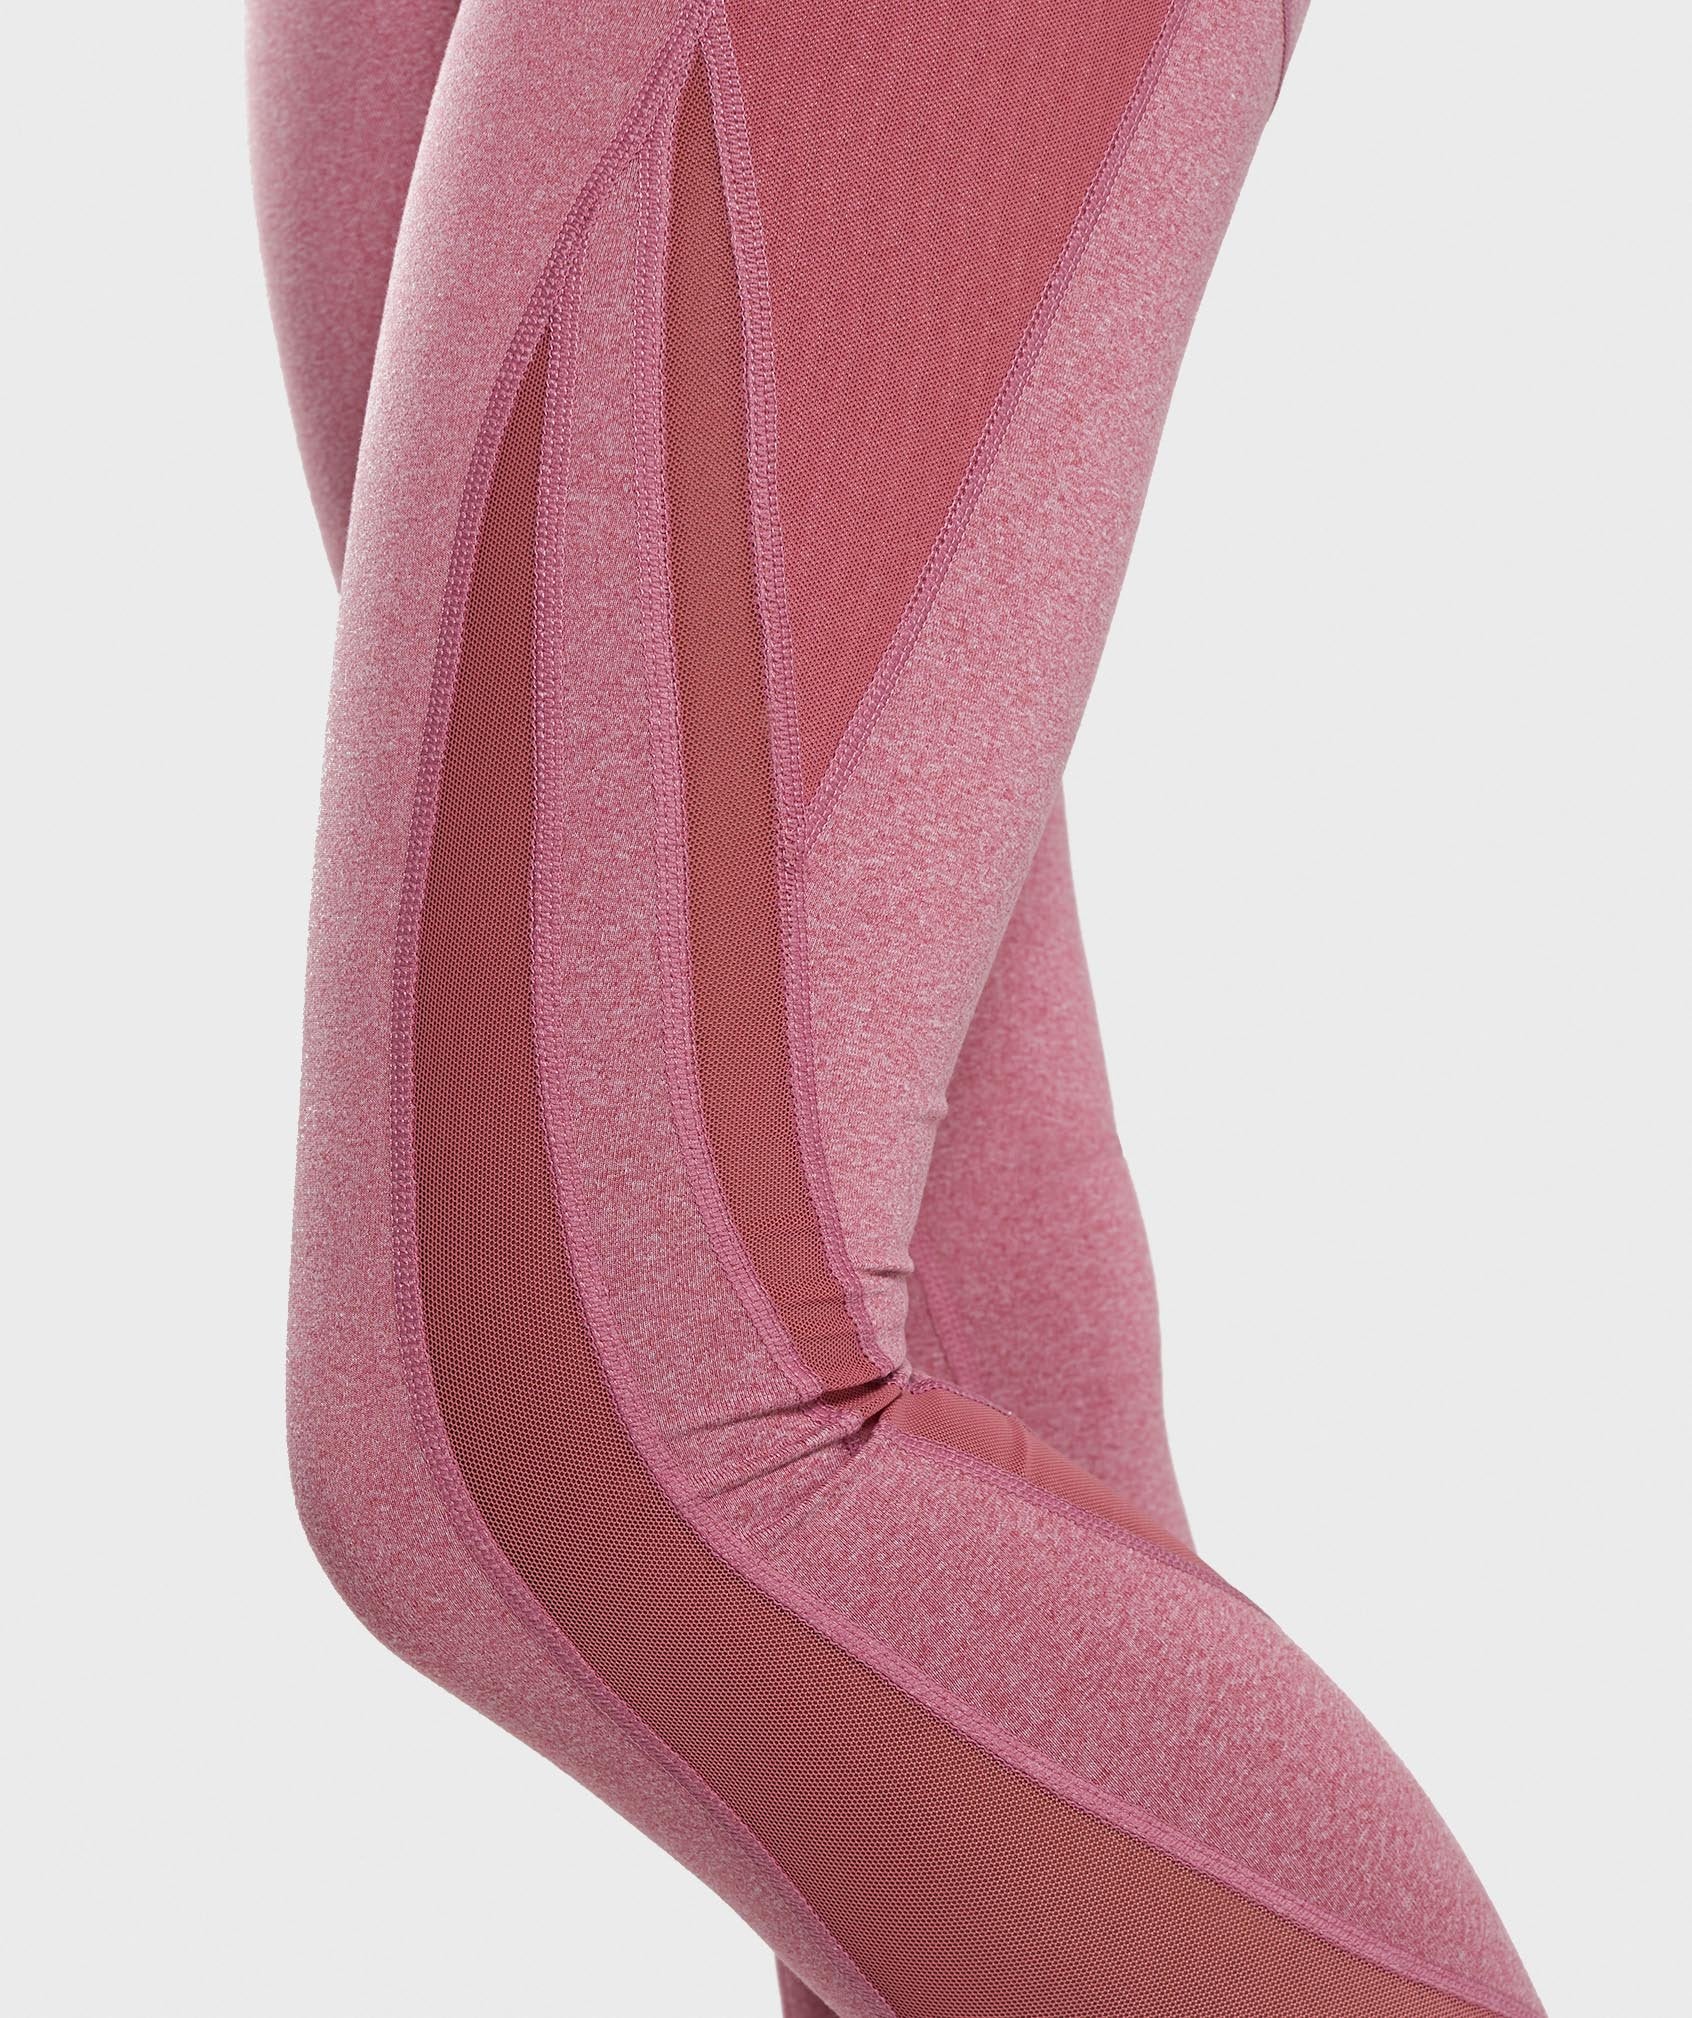 Sleek Sculpture Leggings 2.0 in Dusky Pink Marl - view 5